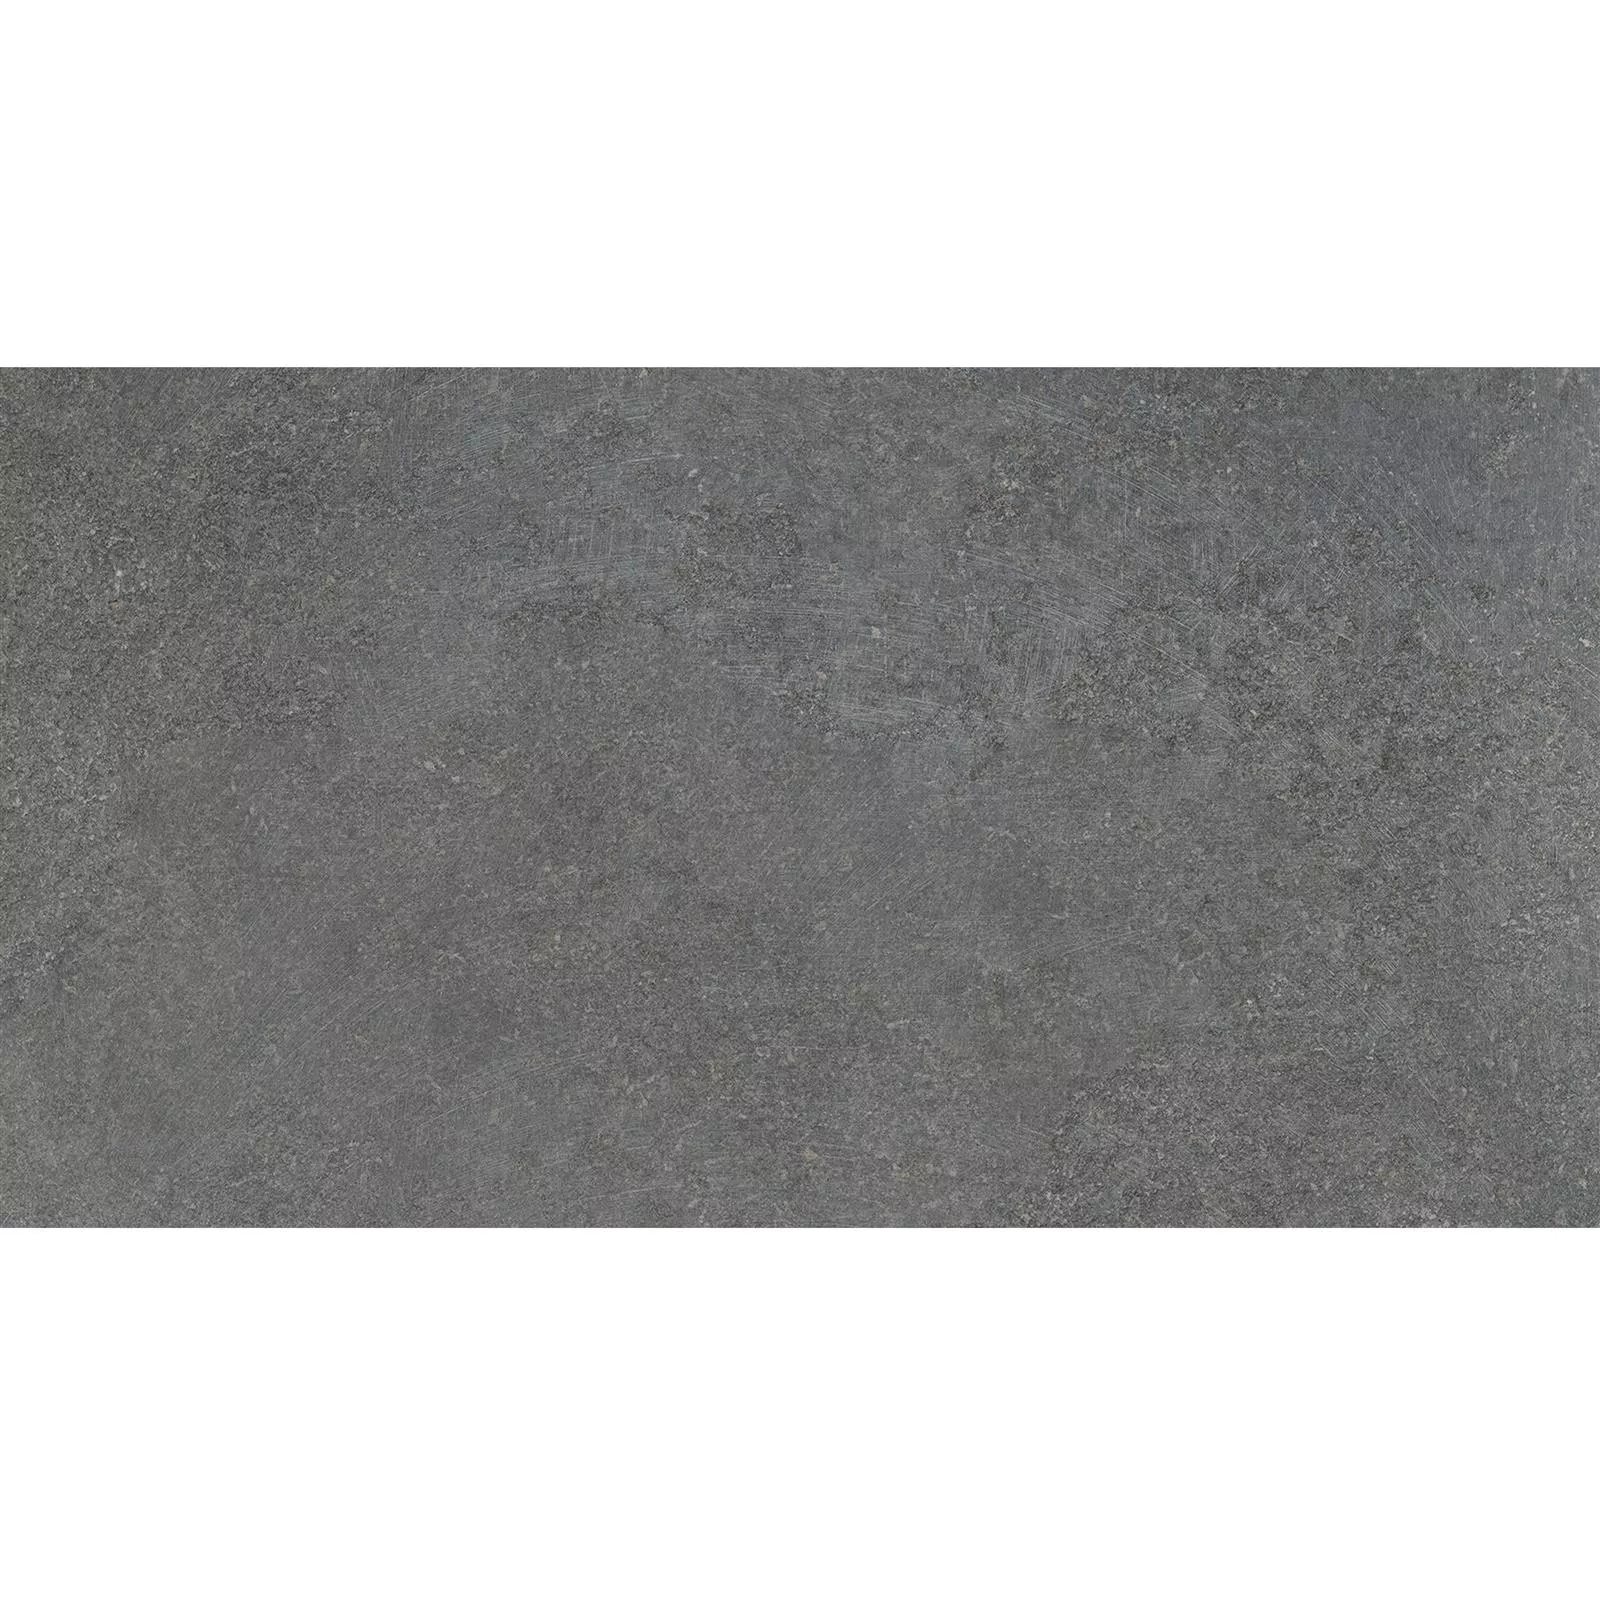 Padrão Ladrilhos Olhar de Pedra Horizon Antracite 30x60cm